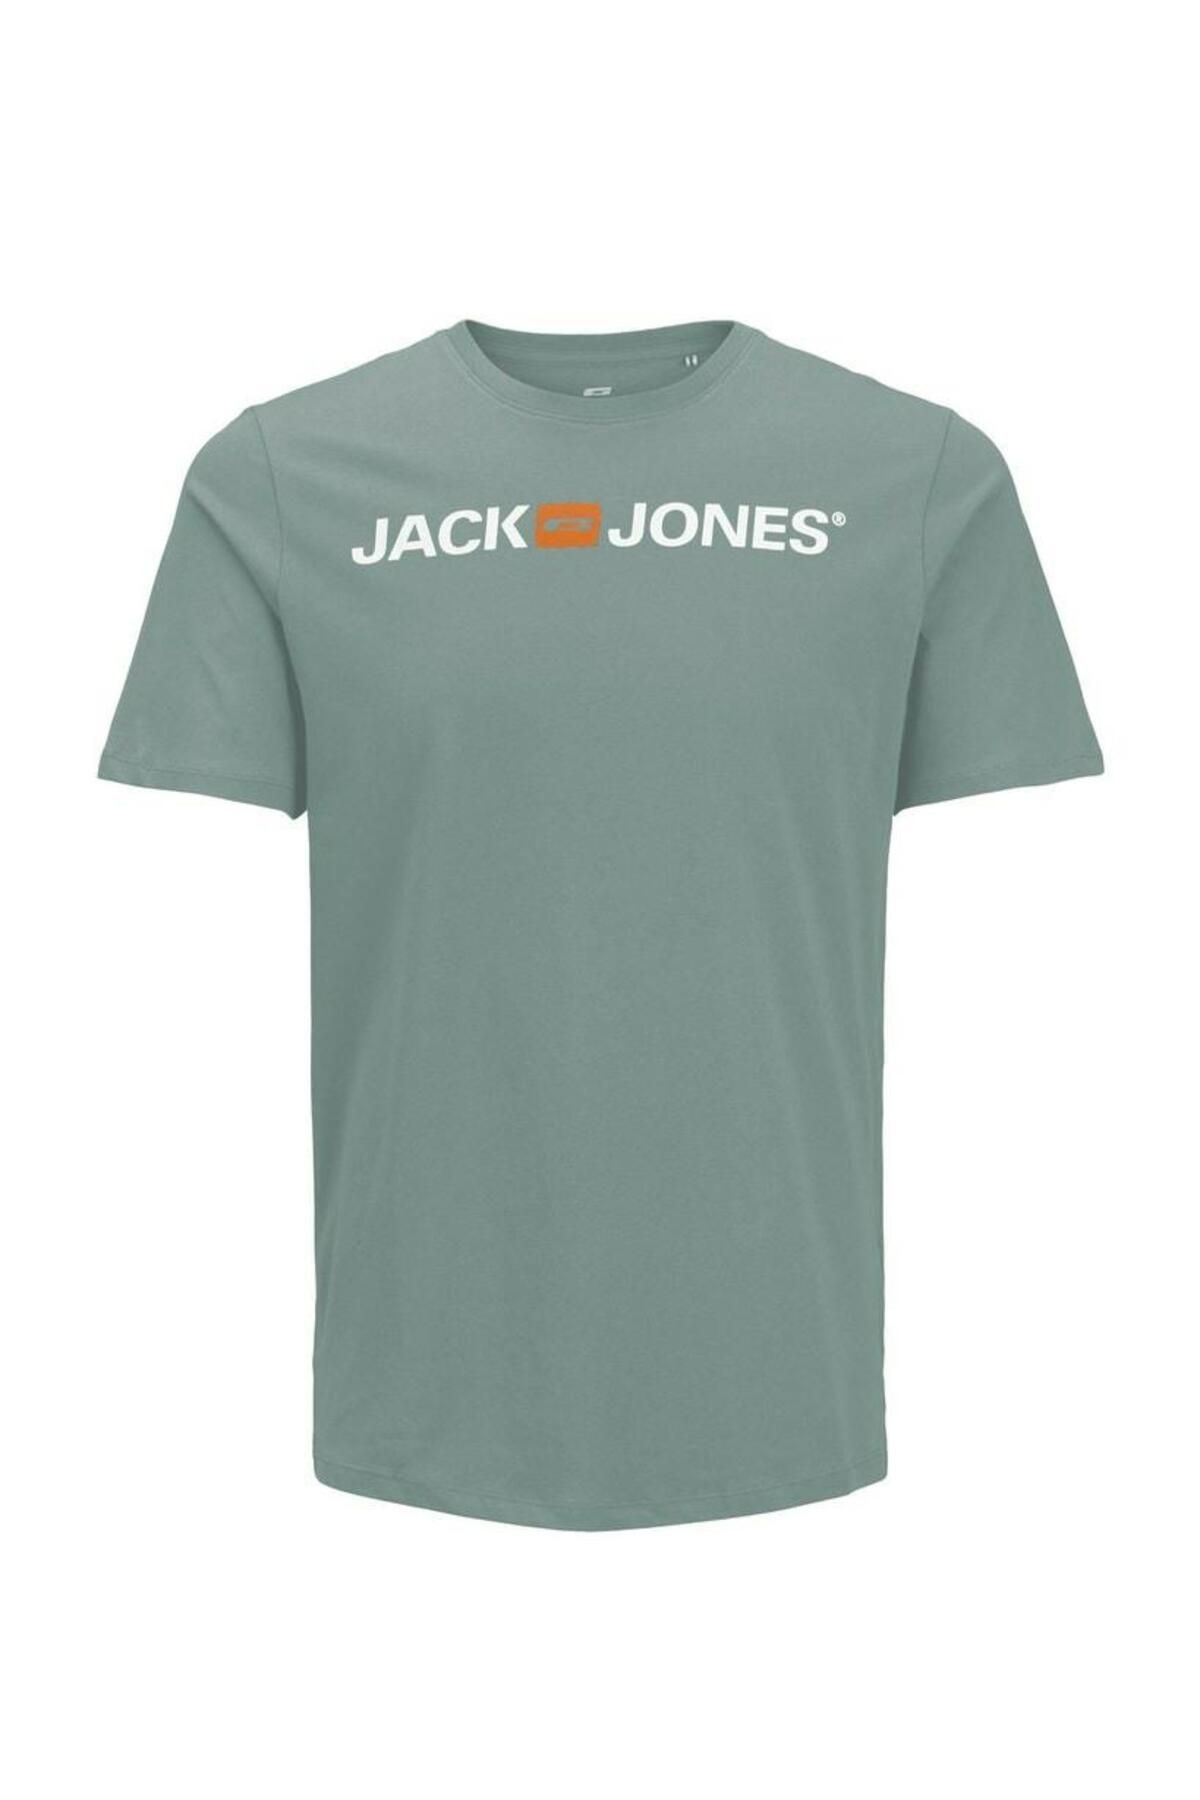 Jack & Jones Jack Jones Logo Crew Neck Noos Erkek Tişört 12137126